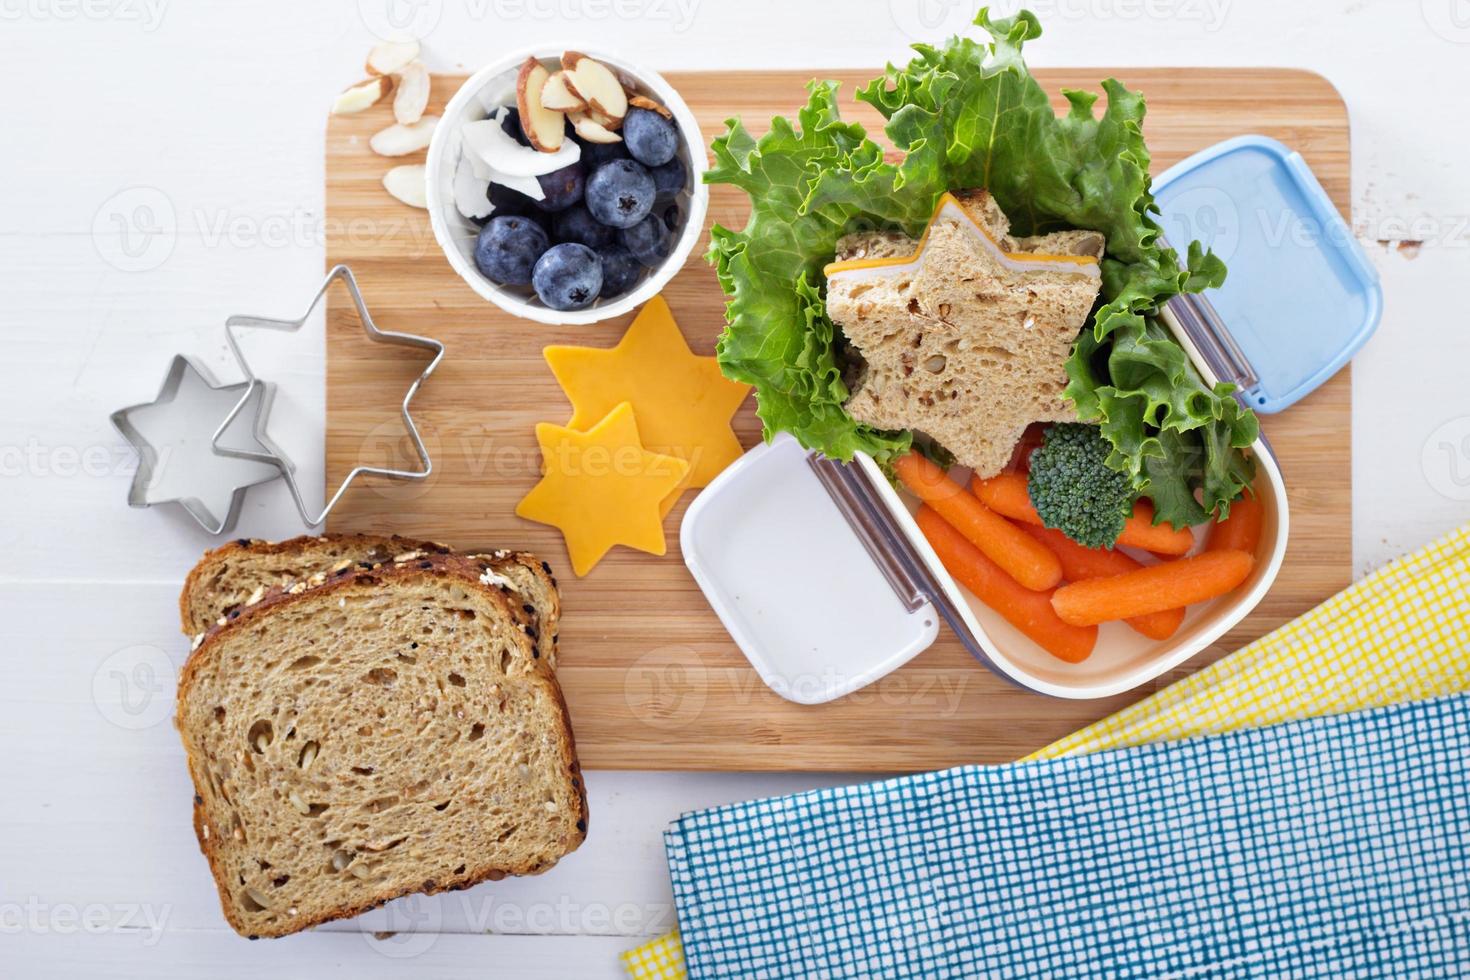 Brotdose mit Sandwich und Salat foto